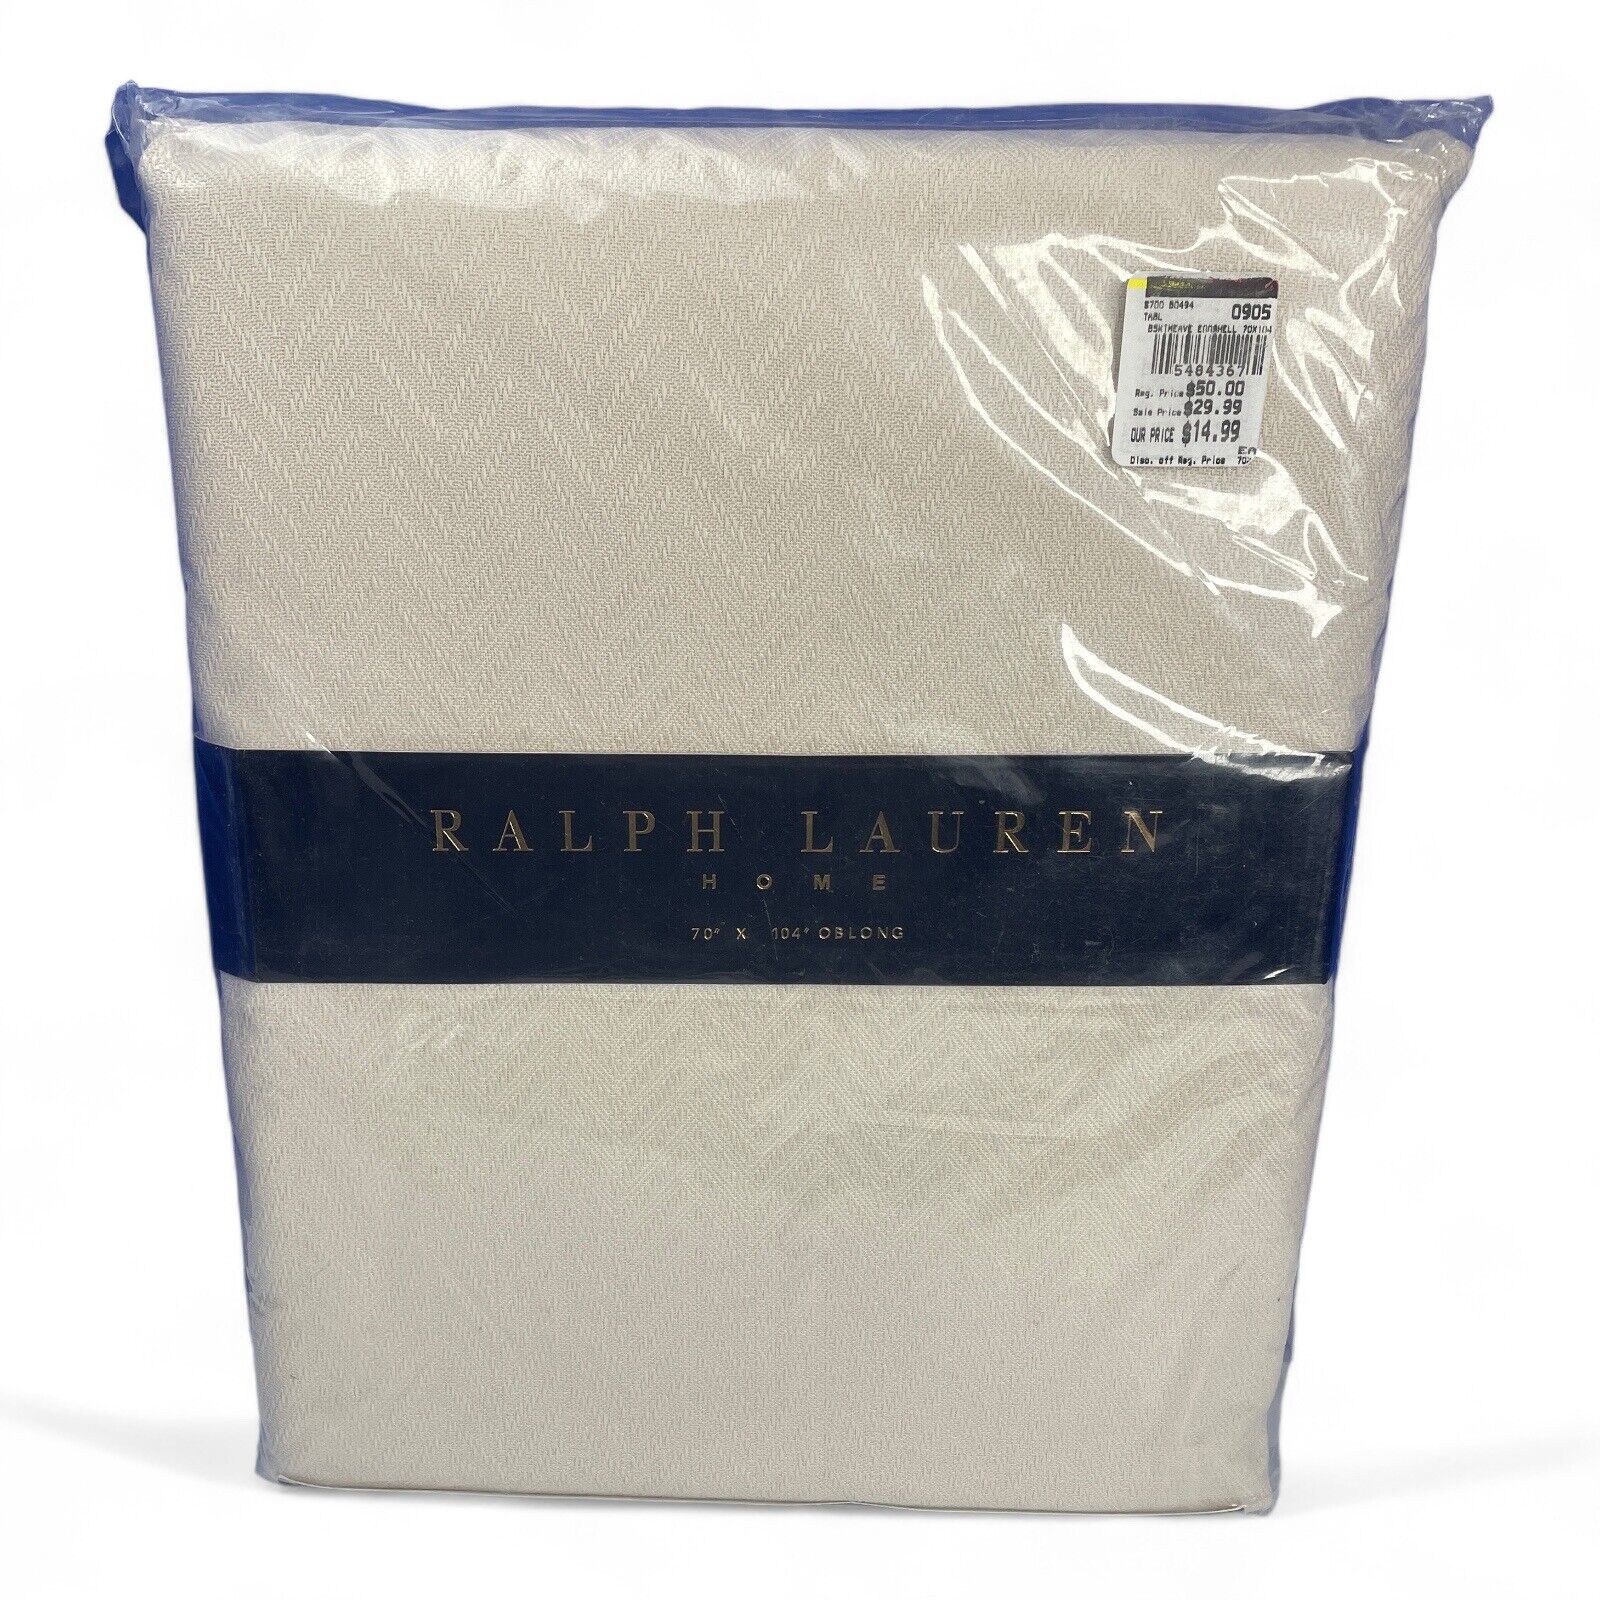 Ralph Lauren Home Eggshell Linen Tablecloth 70 x 104 Oblong New Old Stock